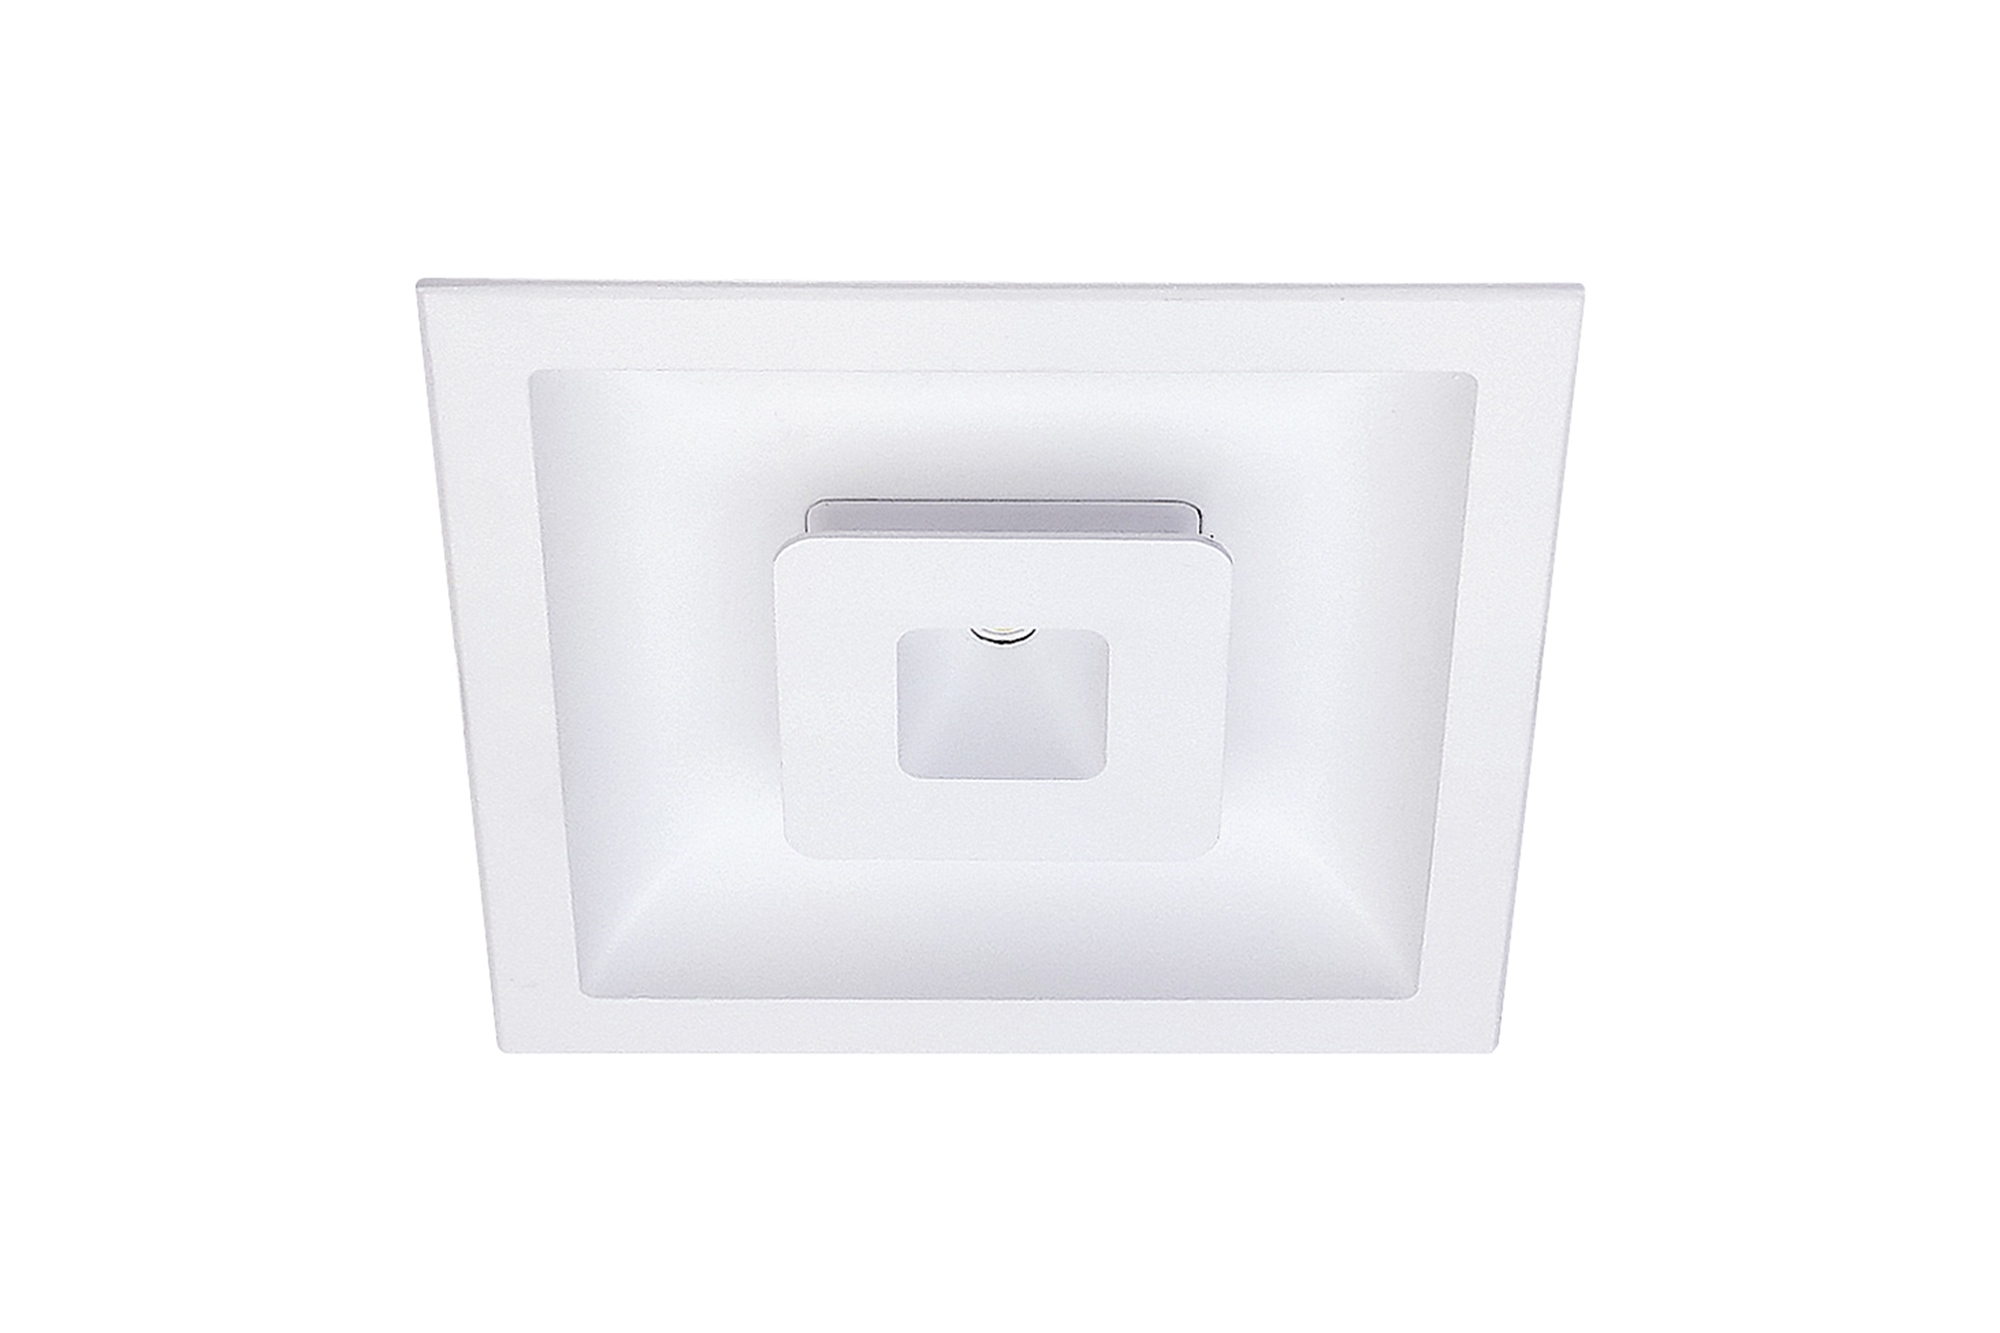 Lampenlux LED Einbaustrahler Sondor Spot eckig weiß inkl Trafo direkte und indirekte Beleuchtung Aluminium 15.5x15.5cm